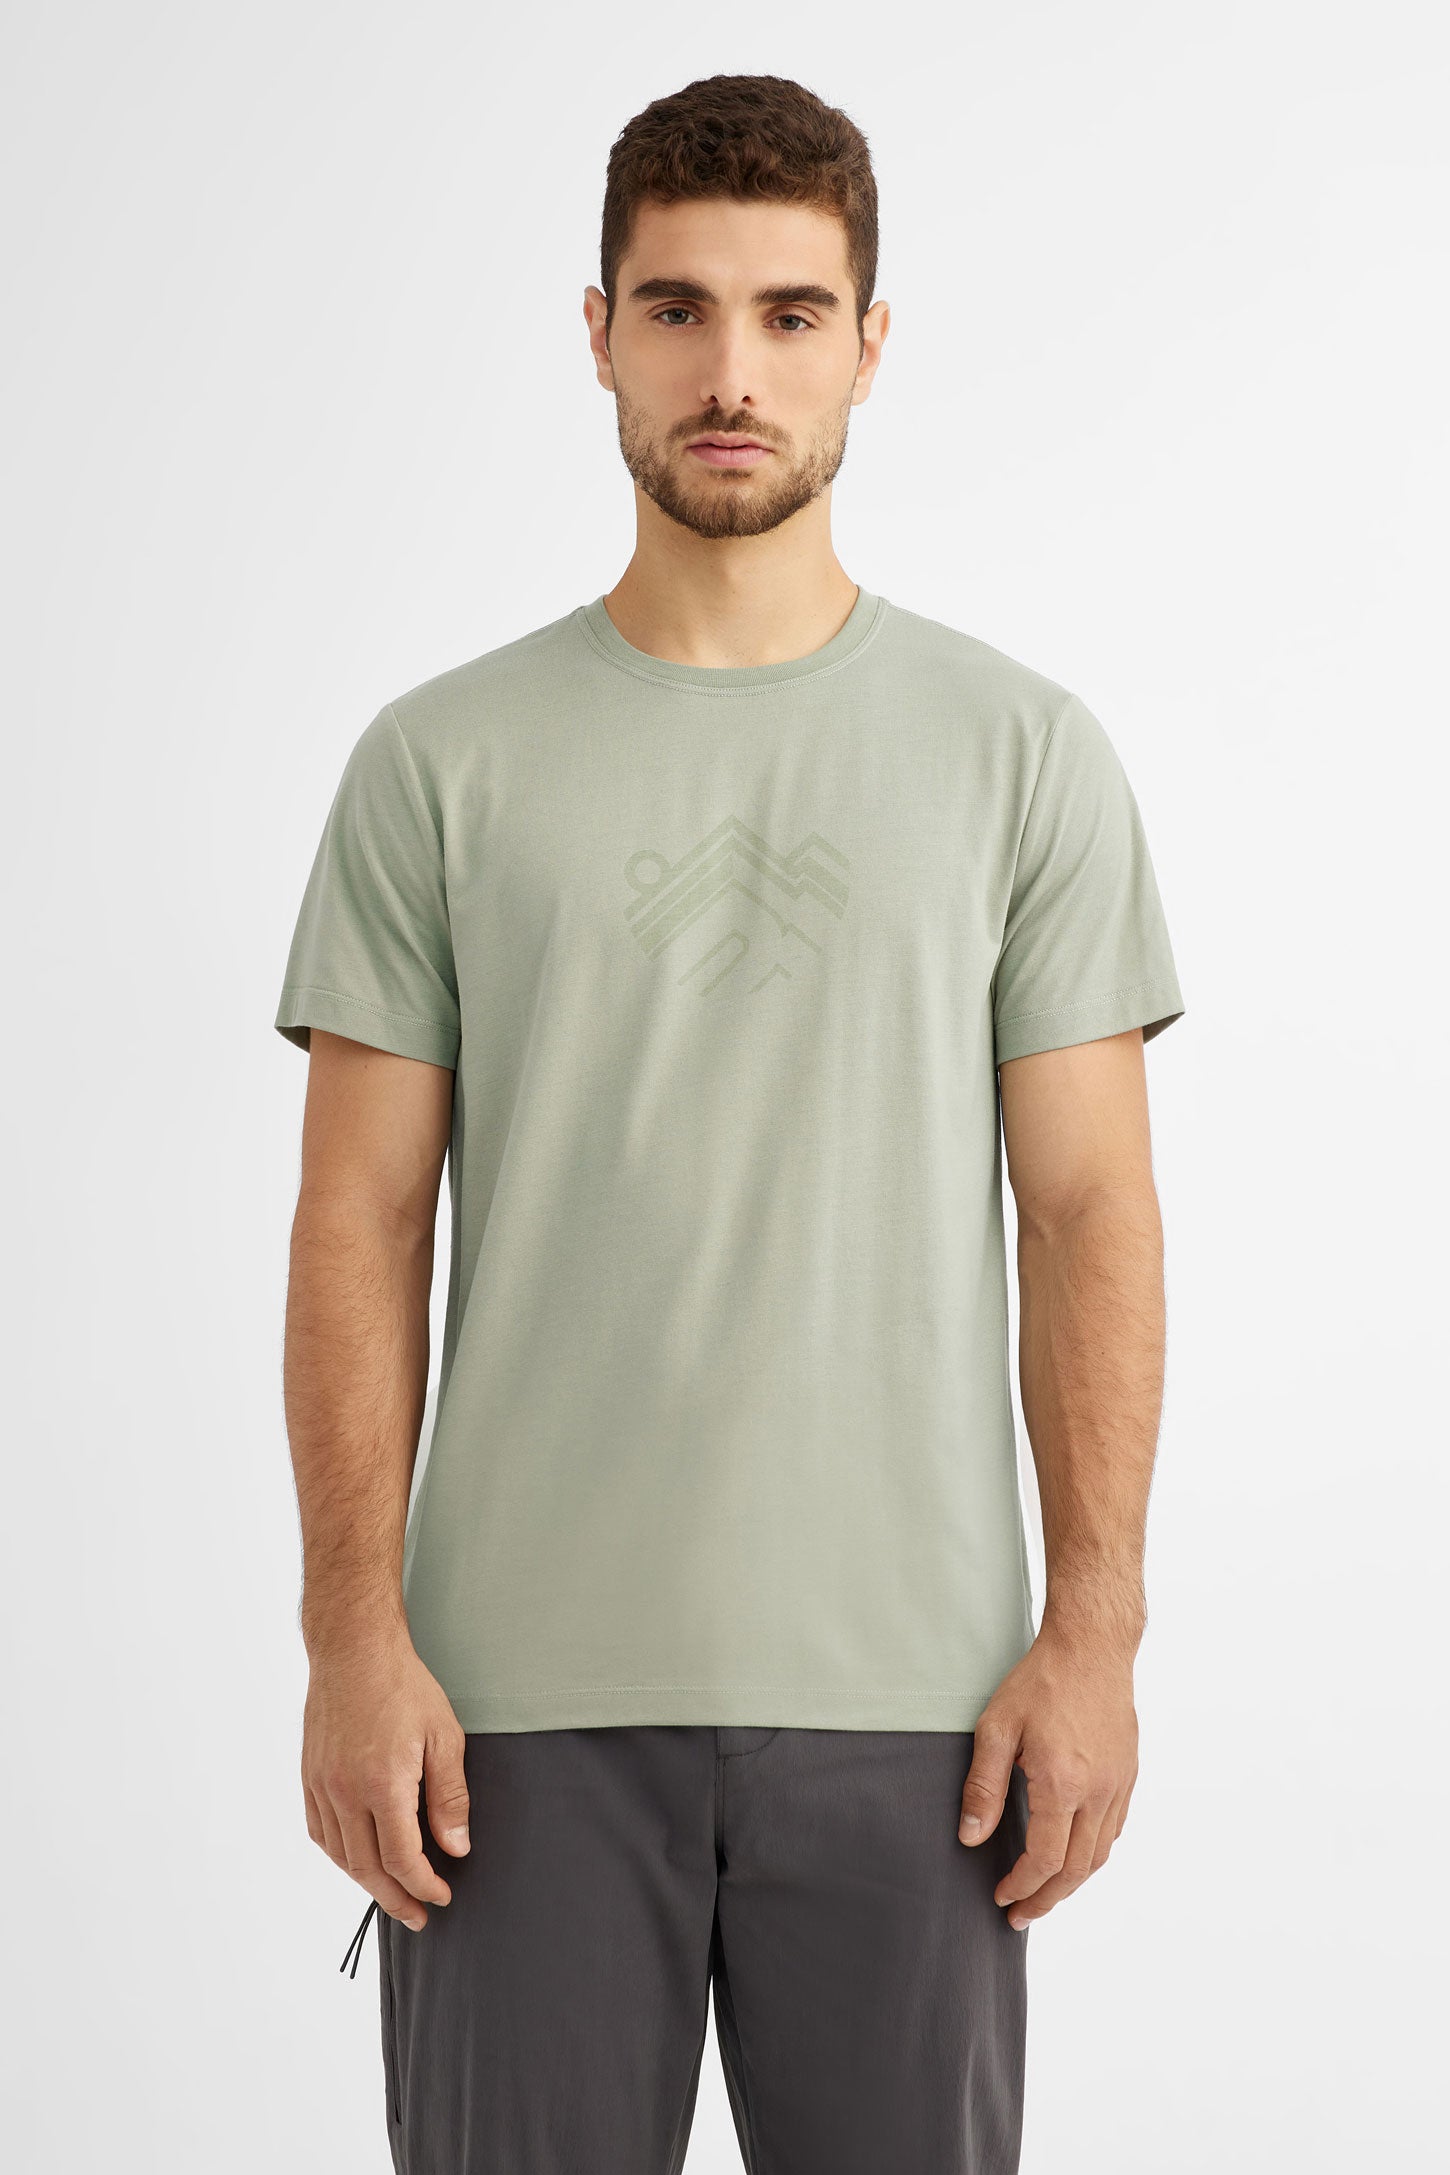 Duos futés, T-shirt coton bio BM, 2/50$ - Homme && VERT